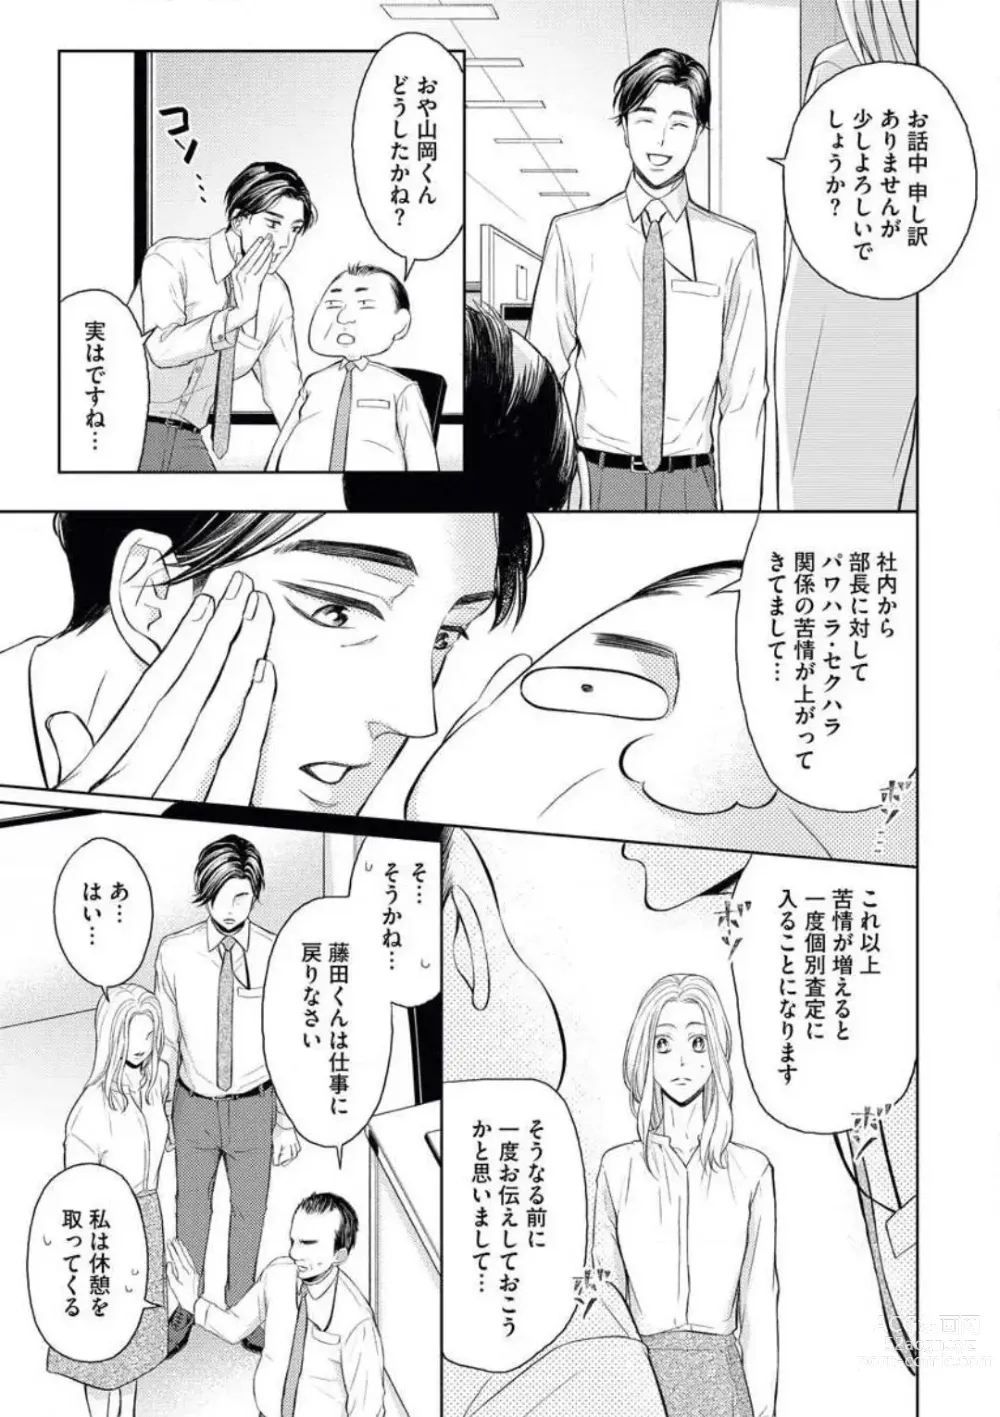 Page 23 of manga Mitsu Koi Maisonette